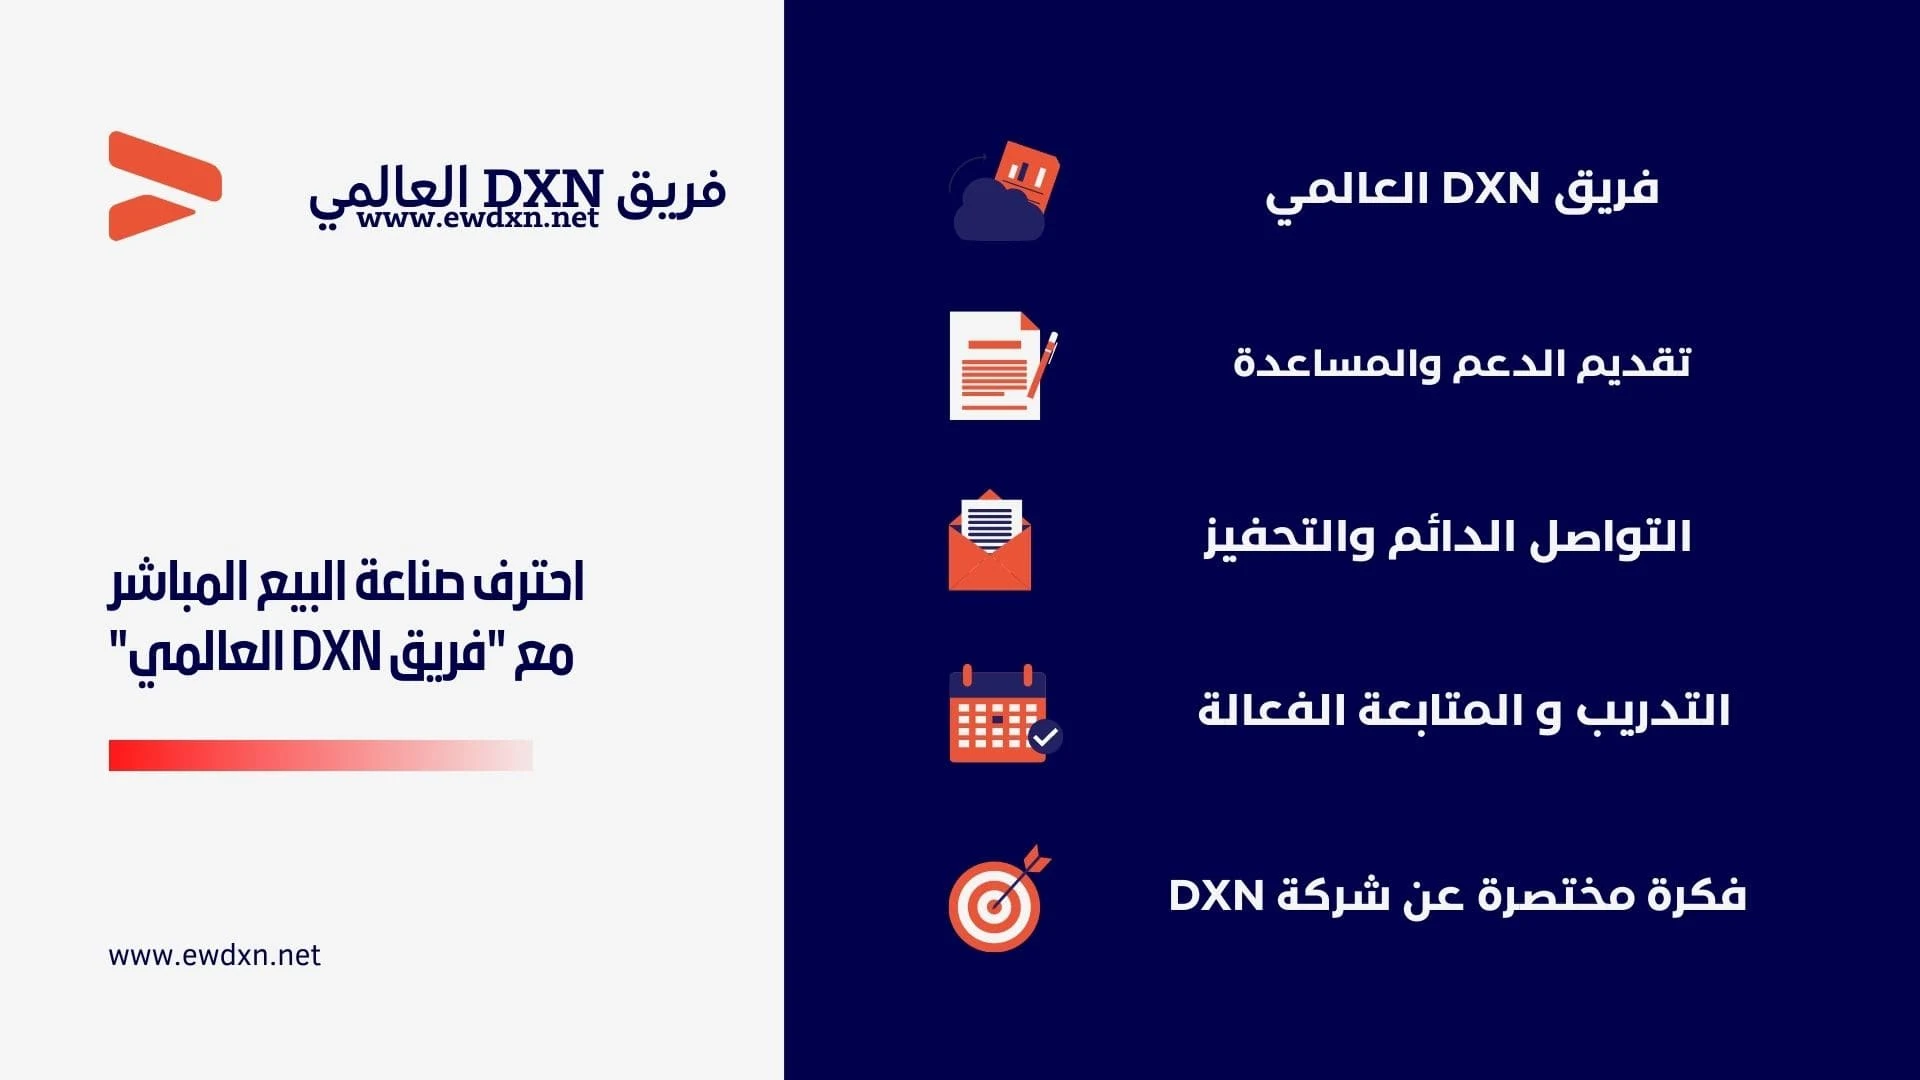 التواصل مع شركة dxn